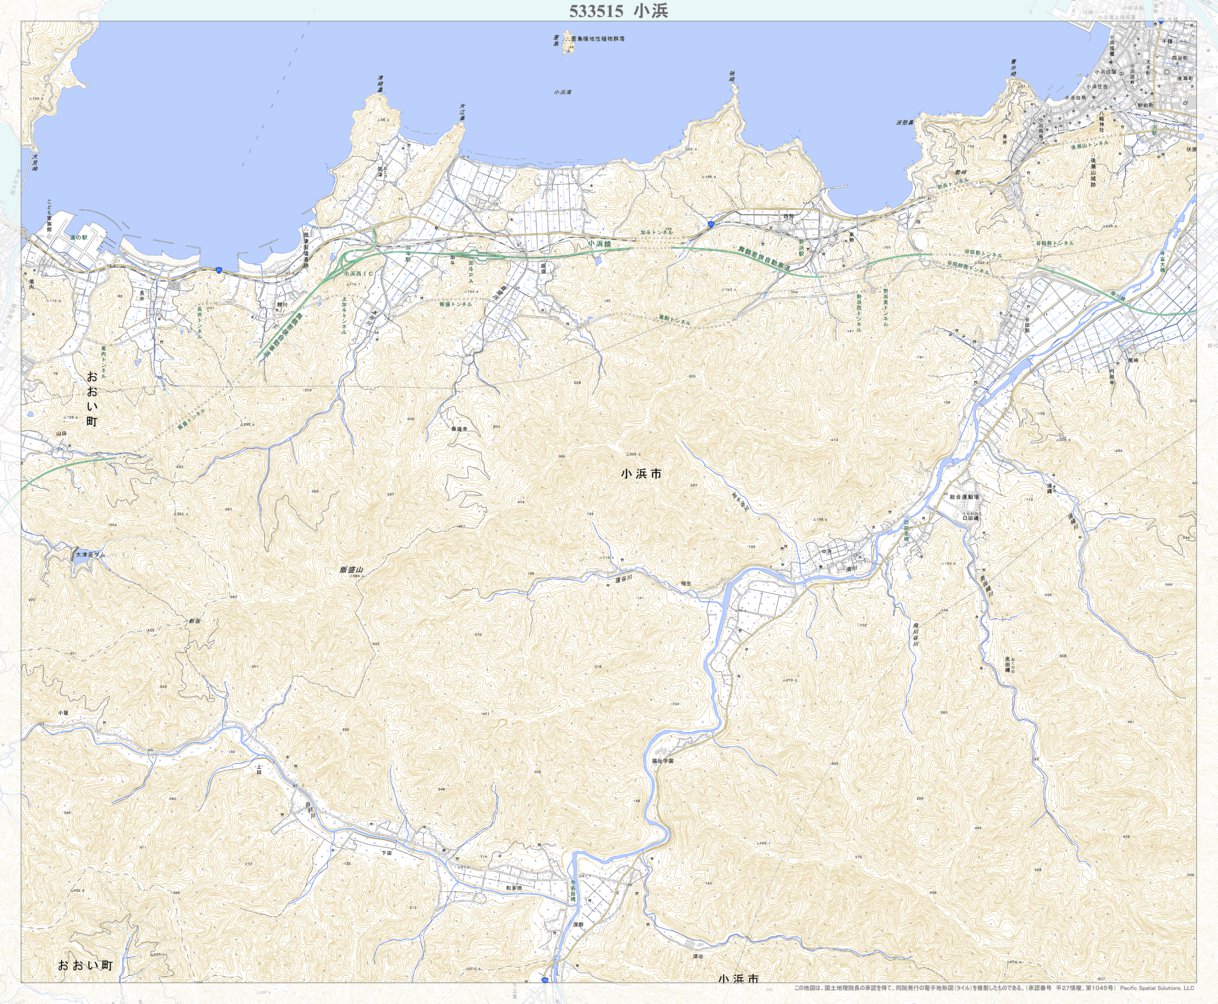 533515 小浜 （おばま Obama）, 地形図 Map by Pacific Spatial 